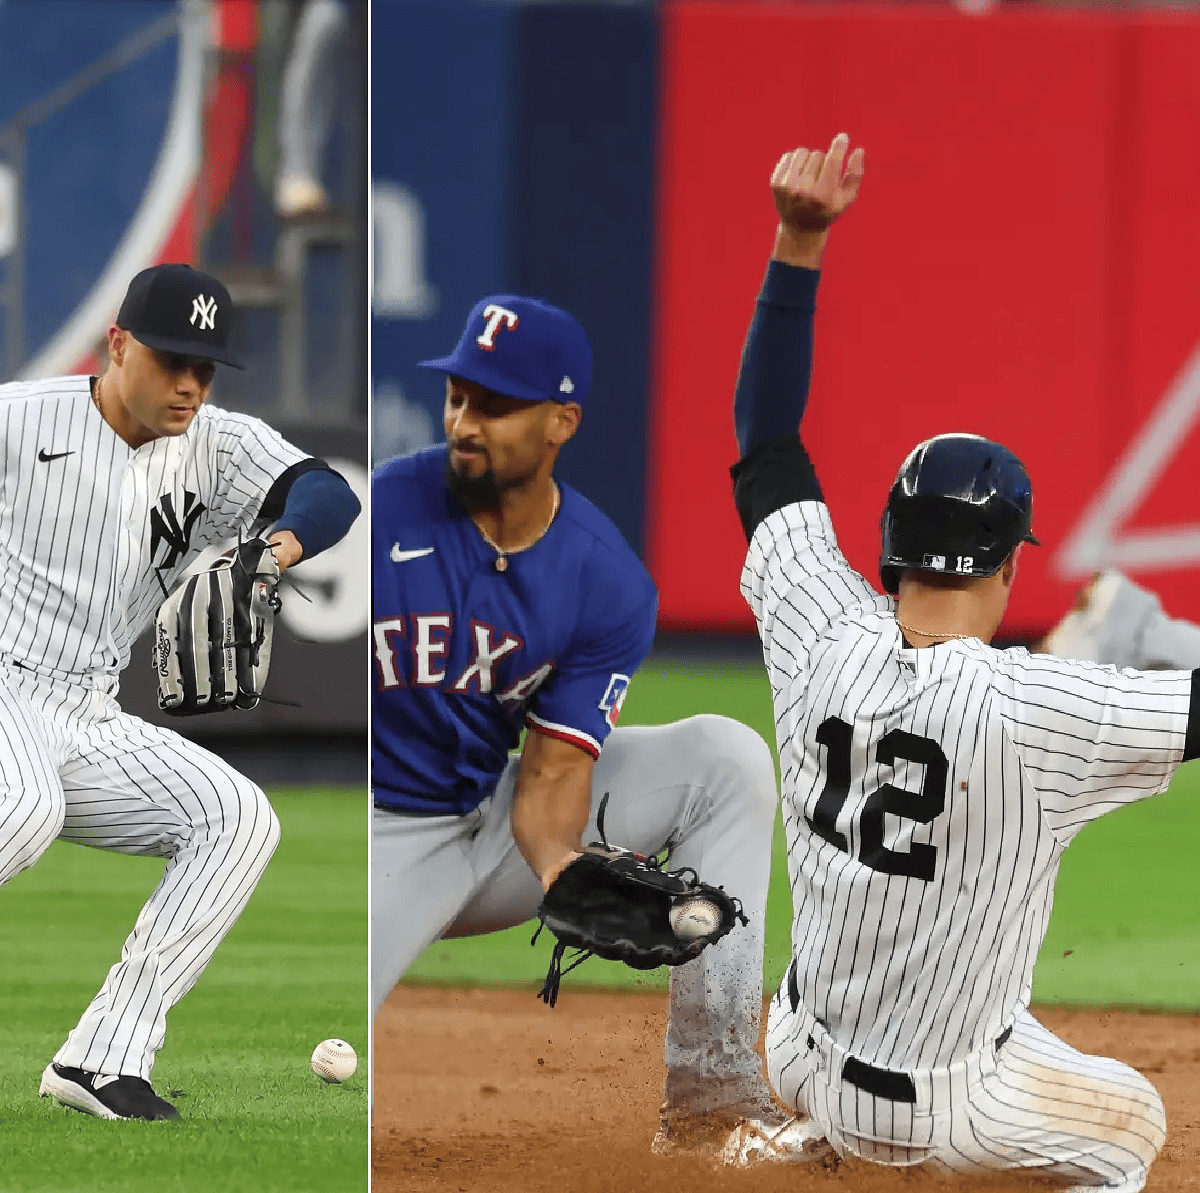 Isiah Kiner-Falefa shouldn't be Yankees' answer at shortstop